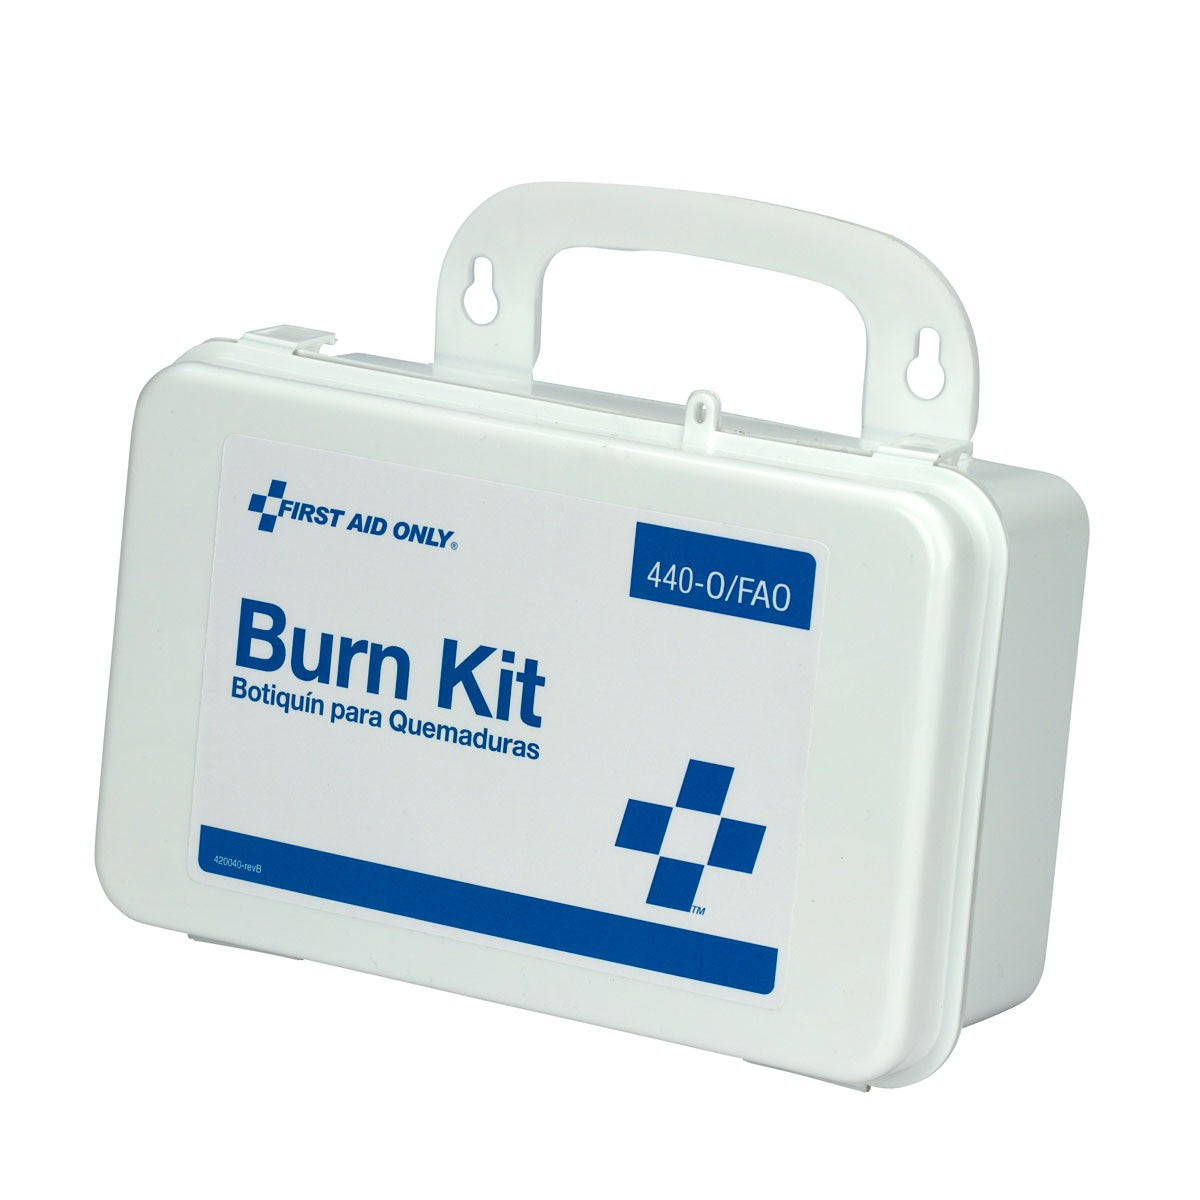 Burn Care Kit, Plastic Case - W-440-O/FAO